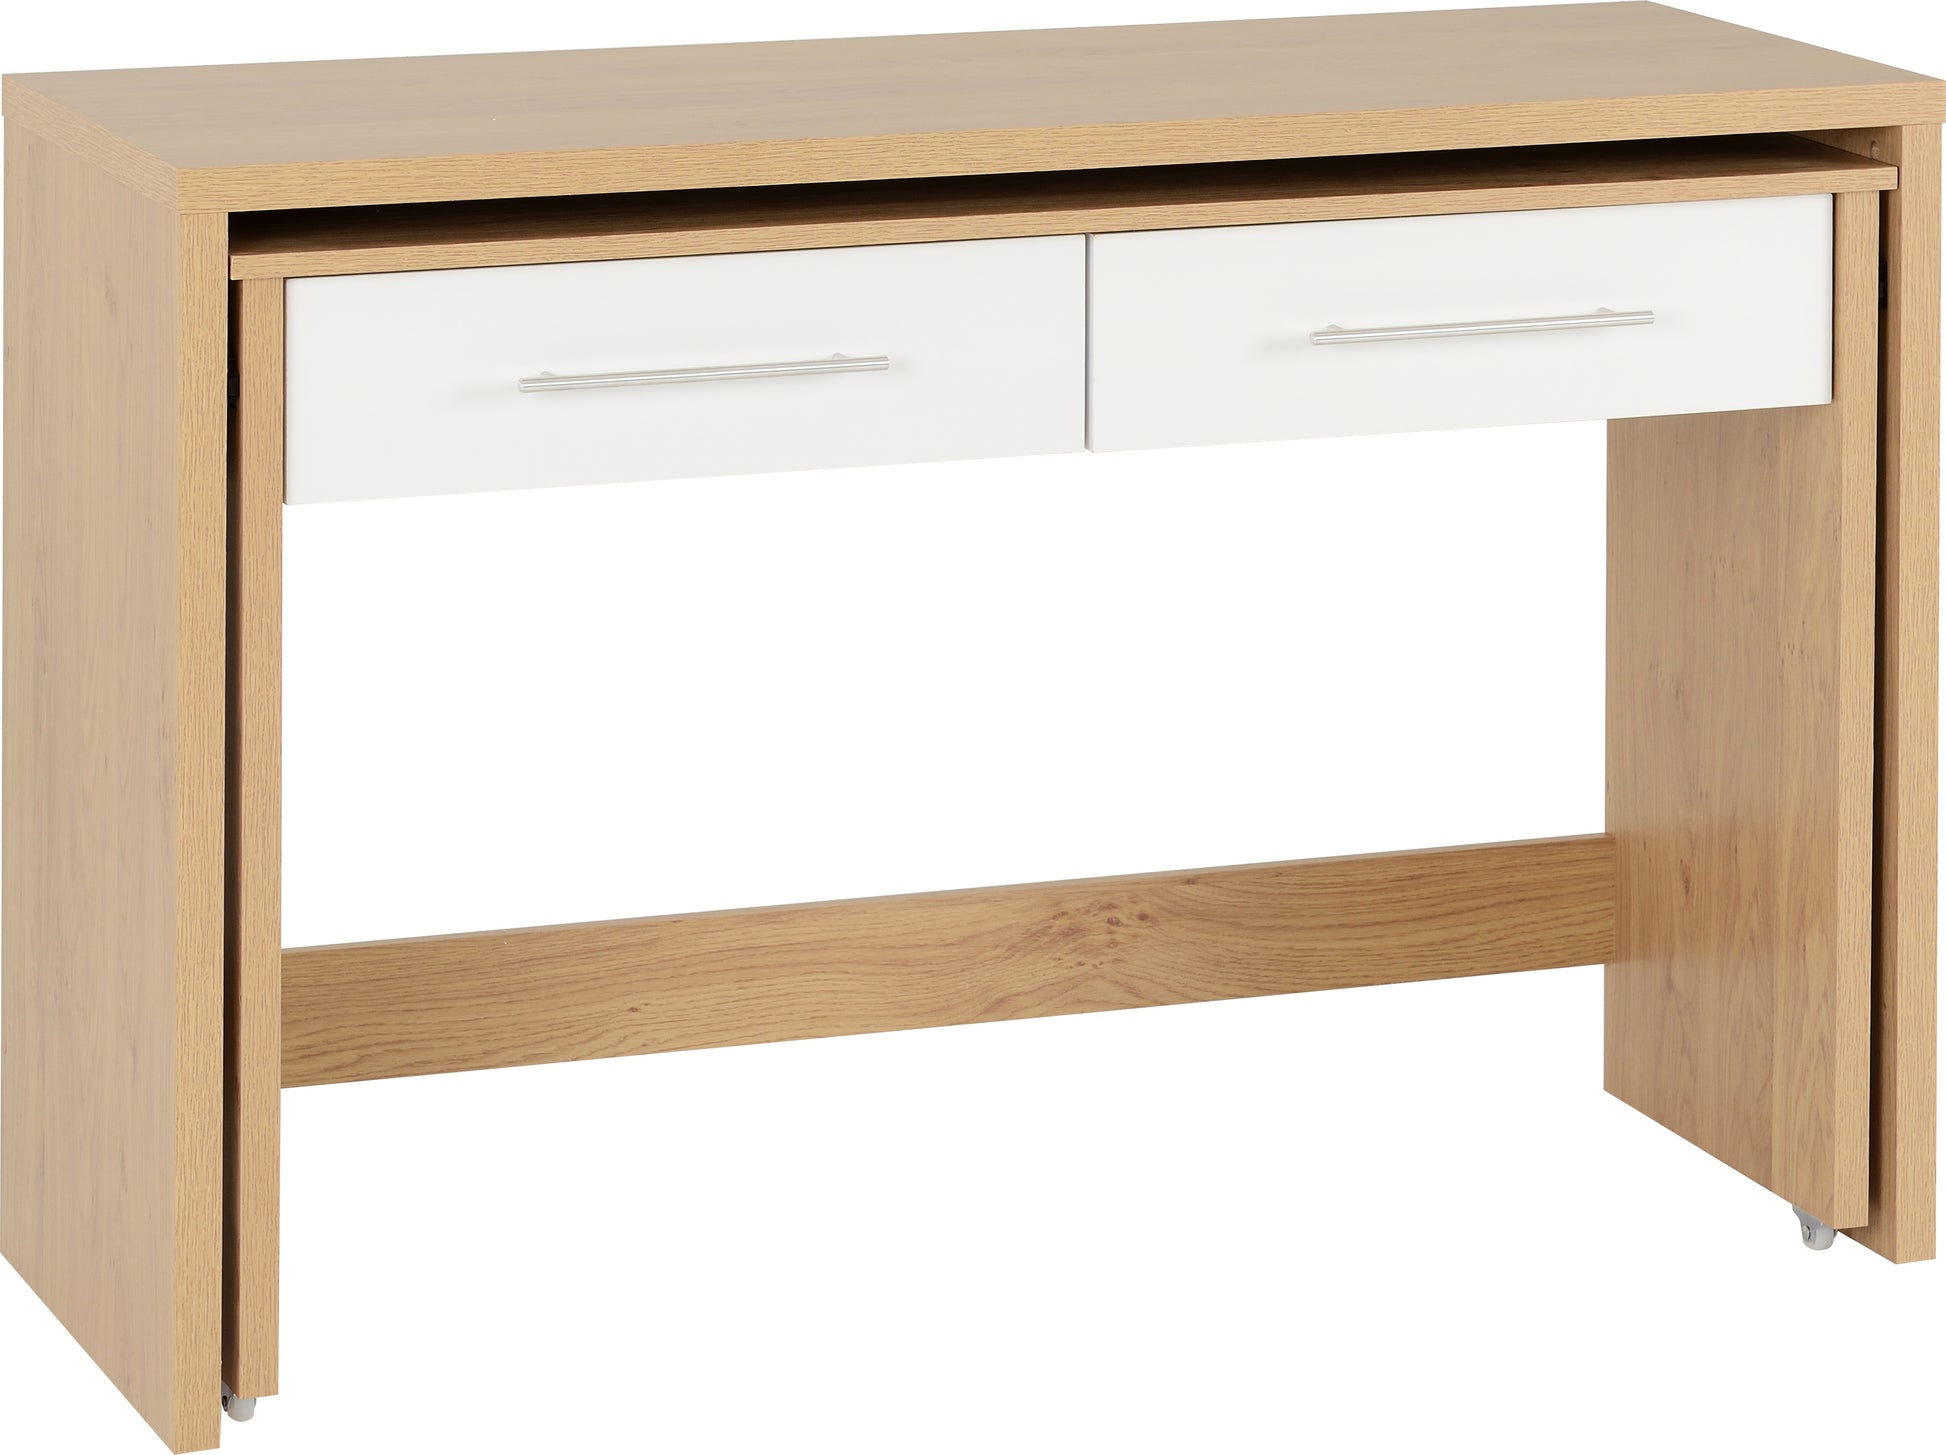 Seville 2 Drawer Slider Desk - White High Gloss/Light Oak Effect Veneer